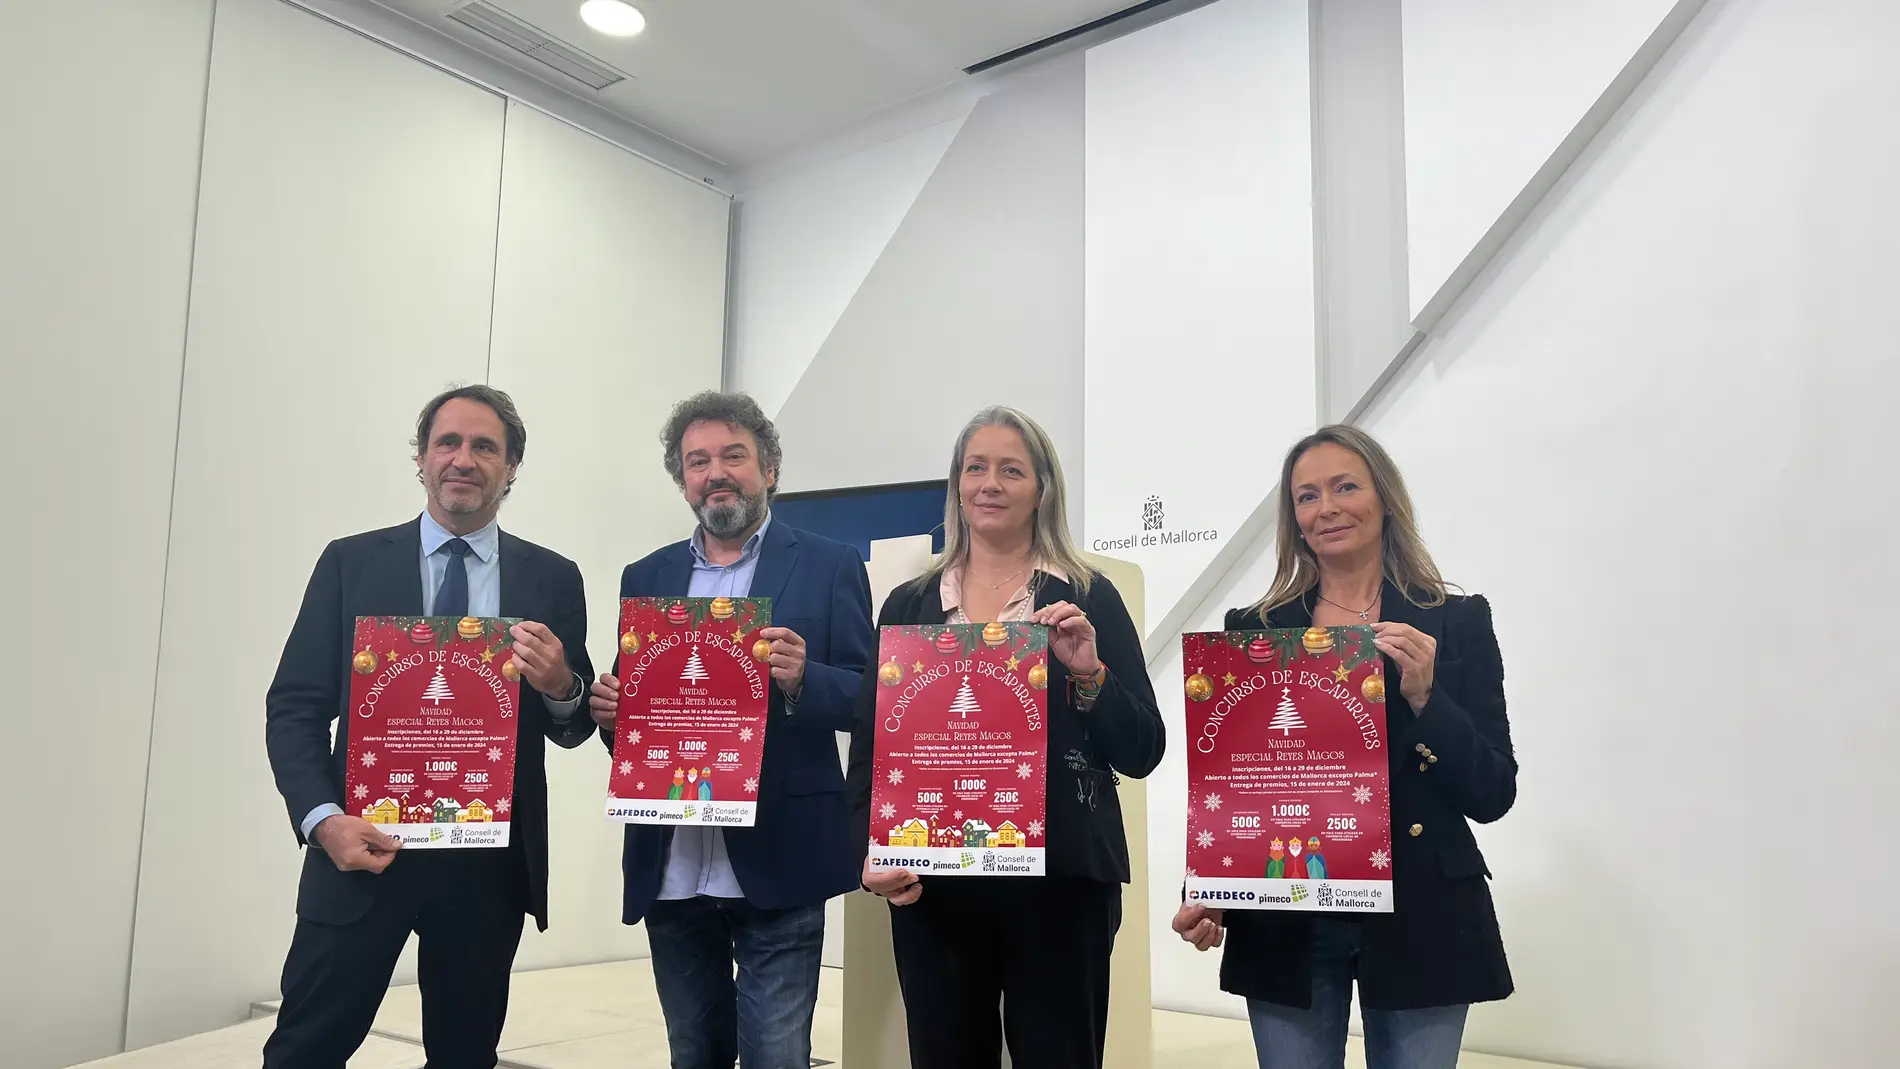 El Consell y las patronales impulsan premios para los mejores escaparates navideños en Mallorca.